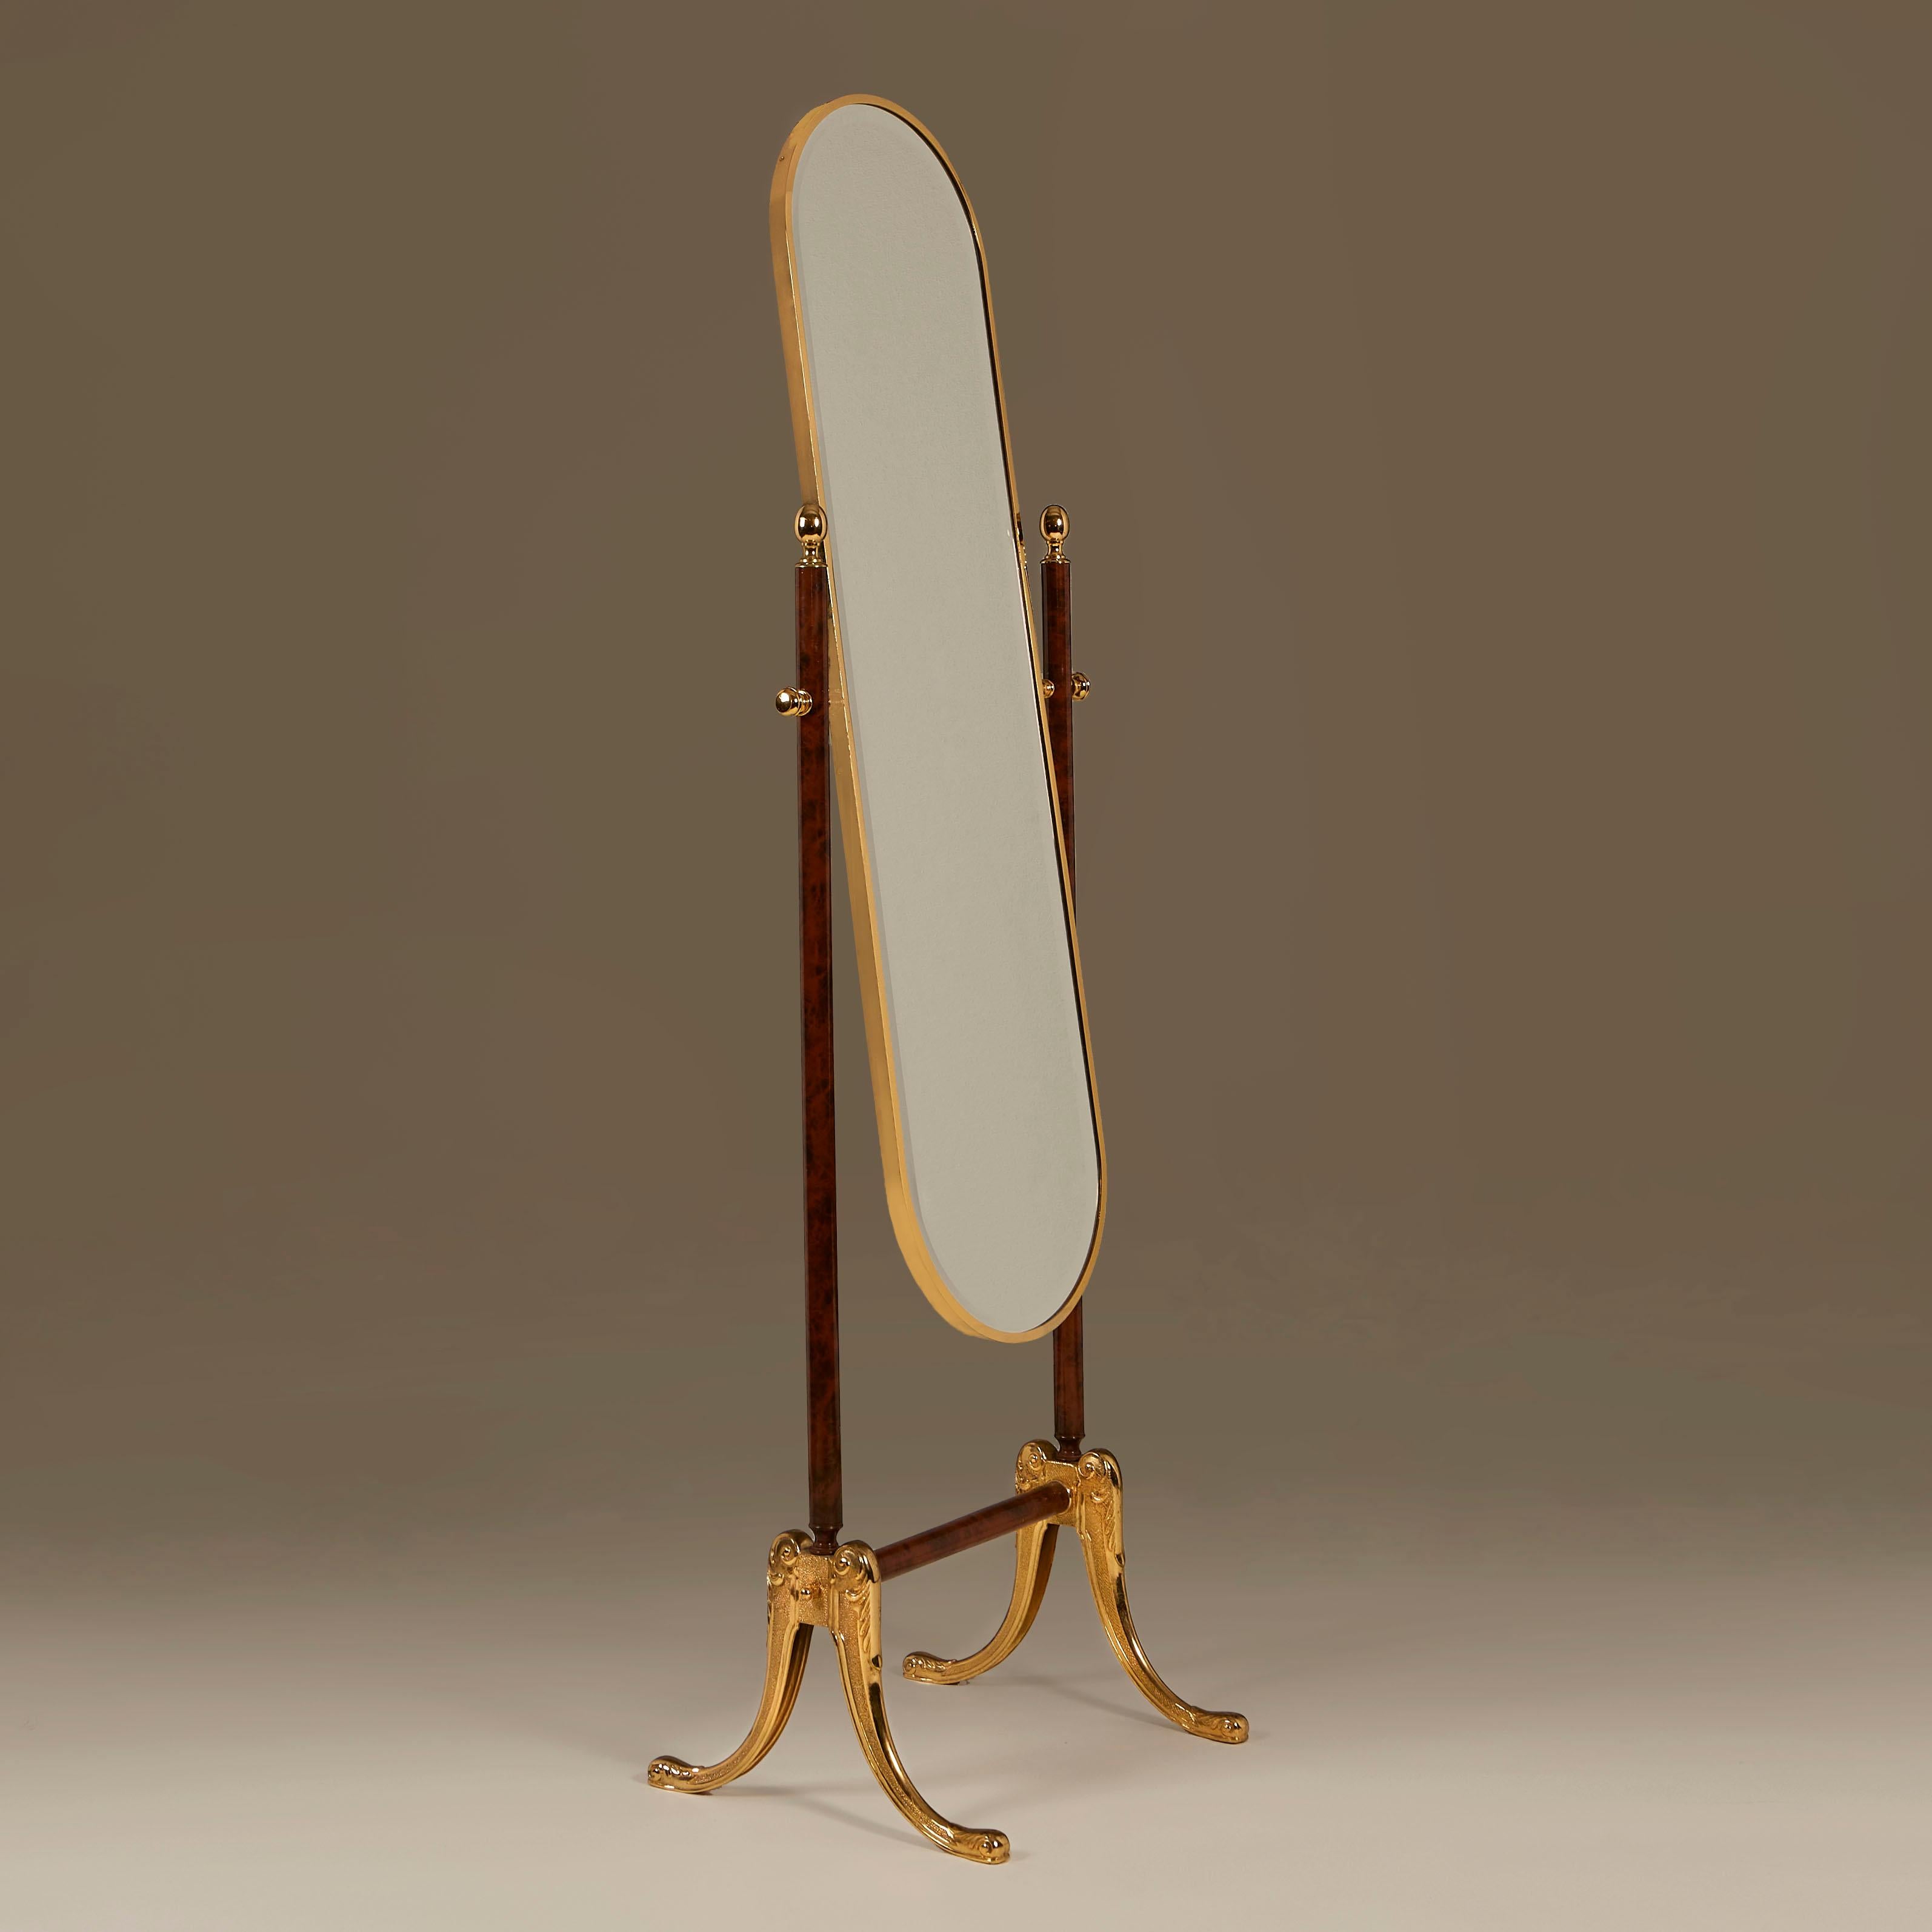 Chic miroir en verre biseauté réglable sur toute la longueur, en faux bois foncé et laiton laqué, avec des pieds en laiton moulé à ébrasement (voir image détaillée).